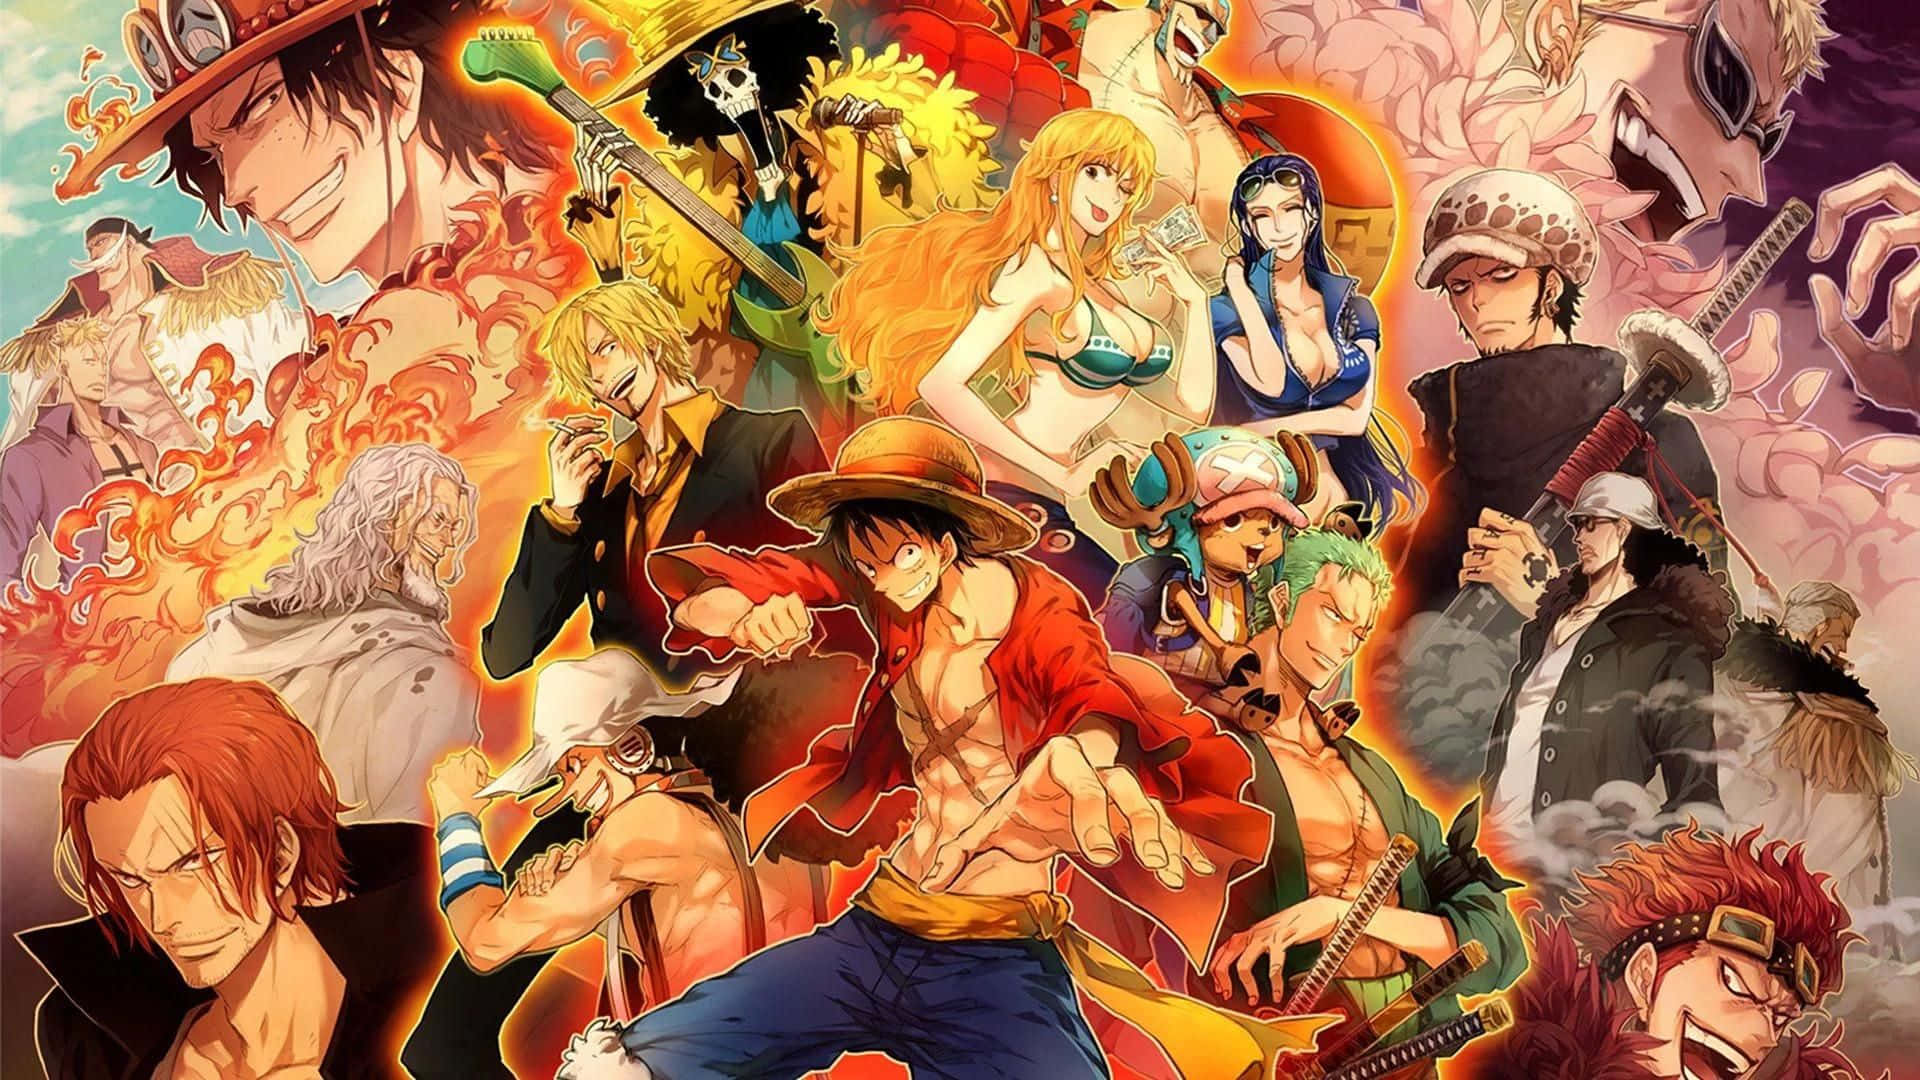 Tải ảnh nền One Piece | Wallpapers.com để có thể thưởng thức những hình nền đẹp mắt nhất của bộ truyện tranh One Piece. Với nhiều lựa chọn khác nhau về nhân vật và địa điểm, bạn sẽ tìm được hình nền phù hợp với phong cách của mình. Hãy tải ngay hôm nay để trang trí cho màn hình điện thoại hoặc máy tính của bạn nhé!